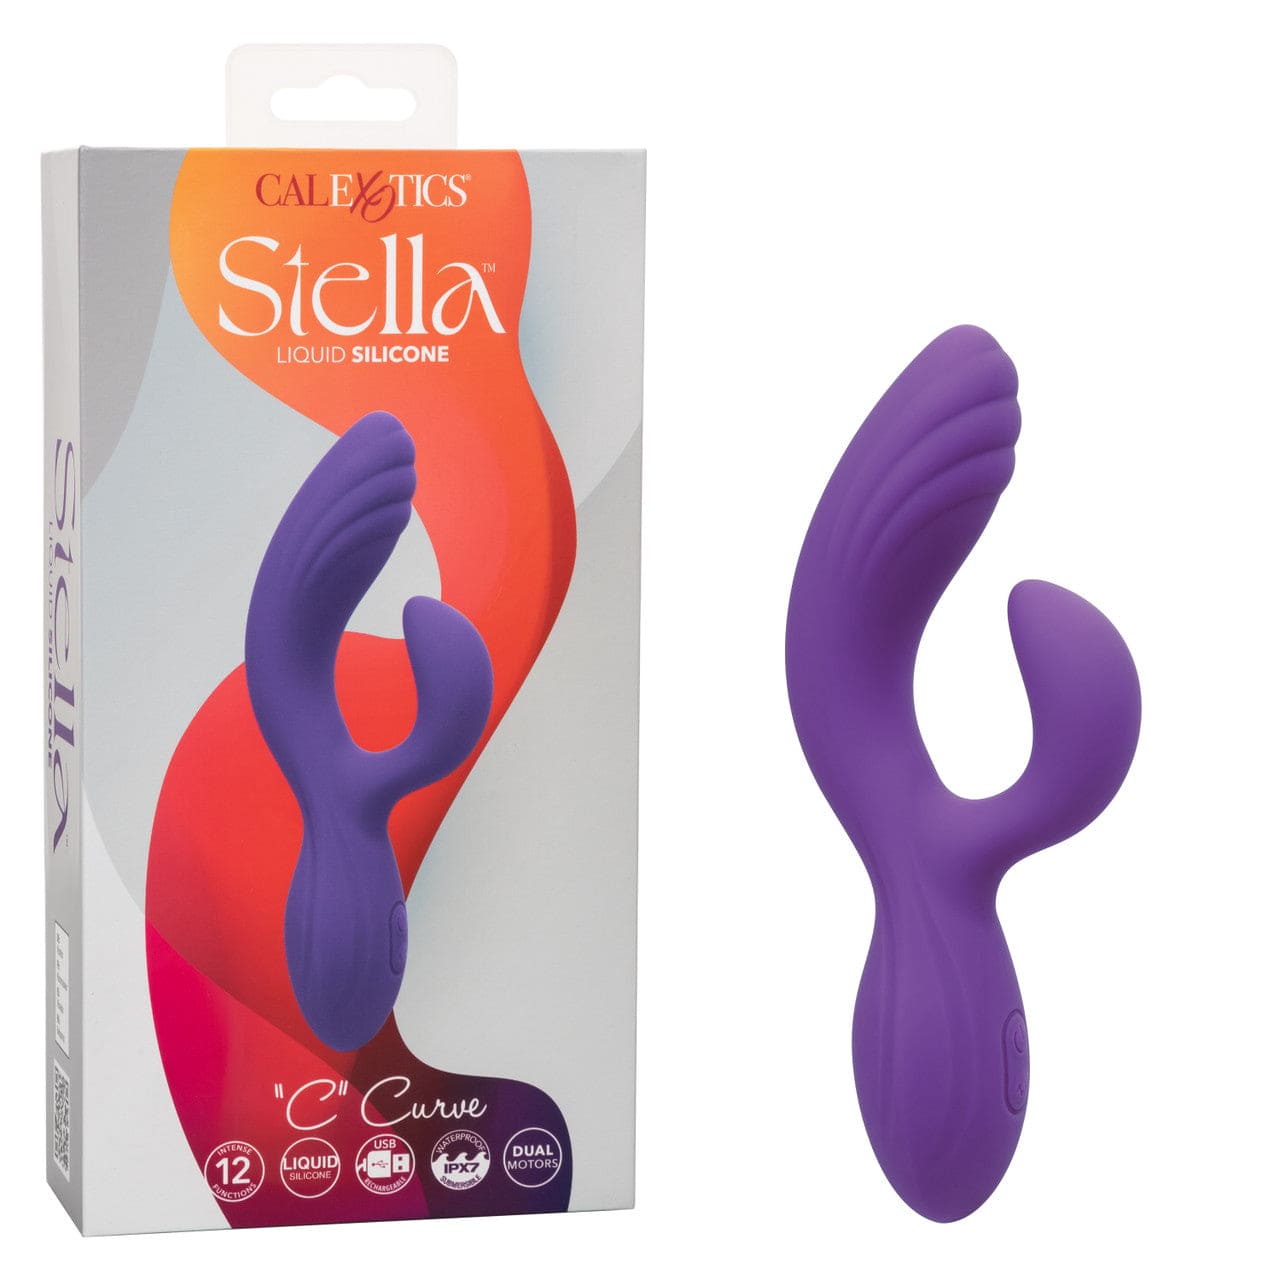 CalExotics® Stella™ Liquid Silicone “C” Curve Vibrator - Rolik®